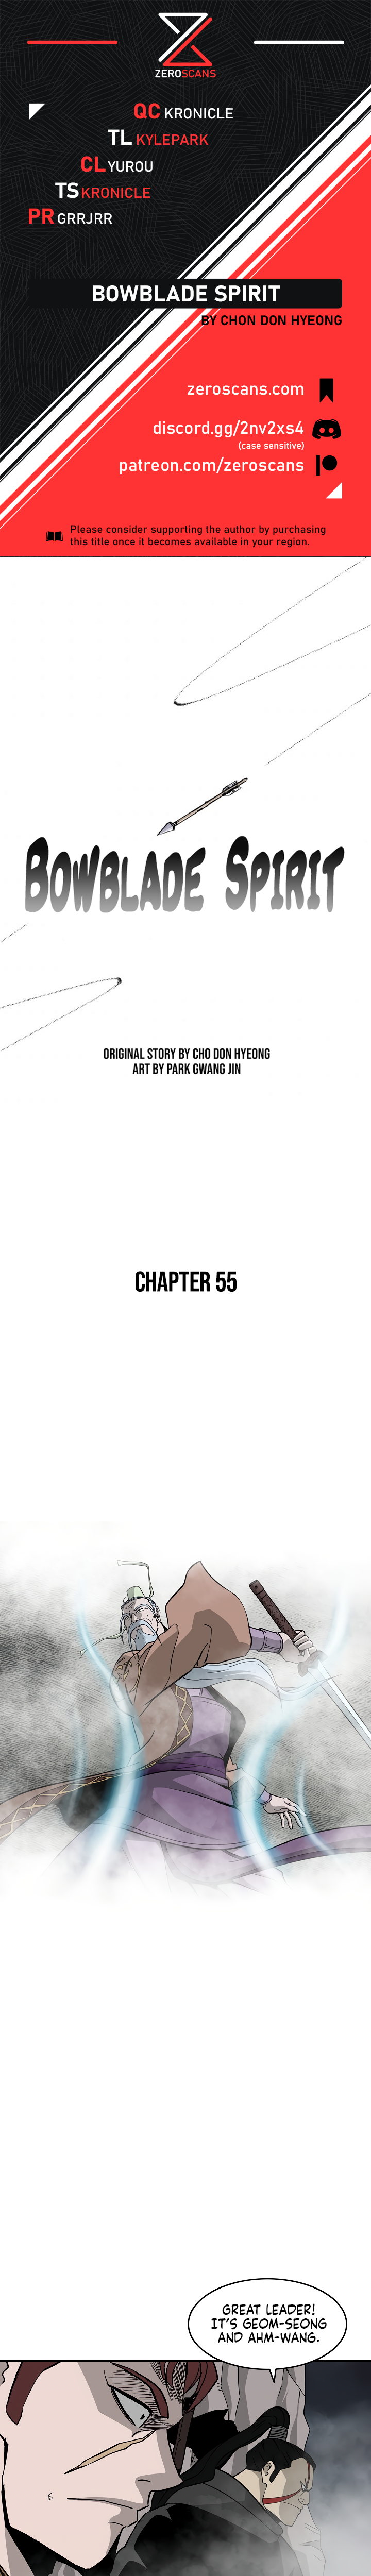 Bowblade Spirit - Chapter 3743 - Image 1